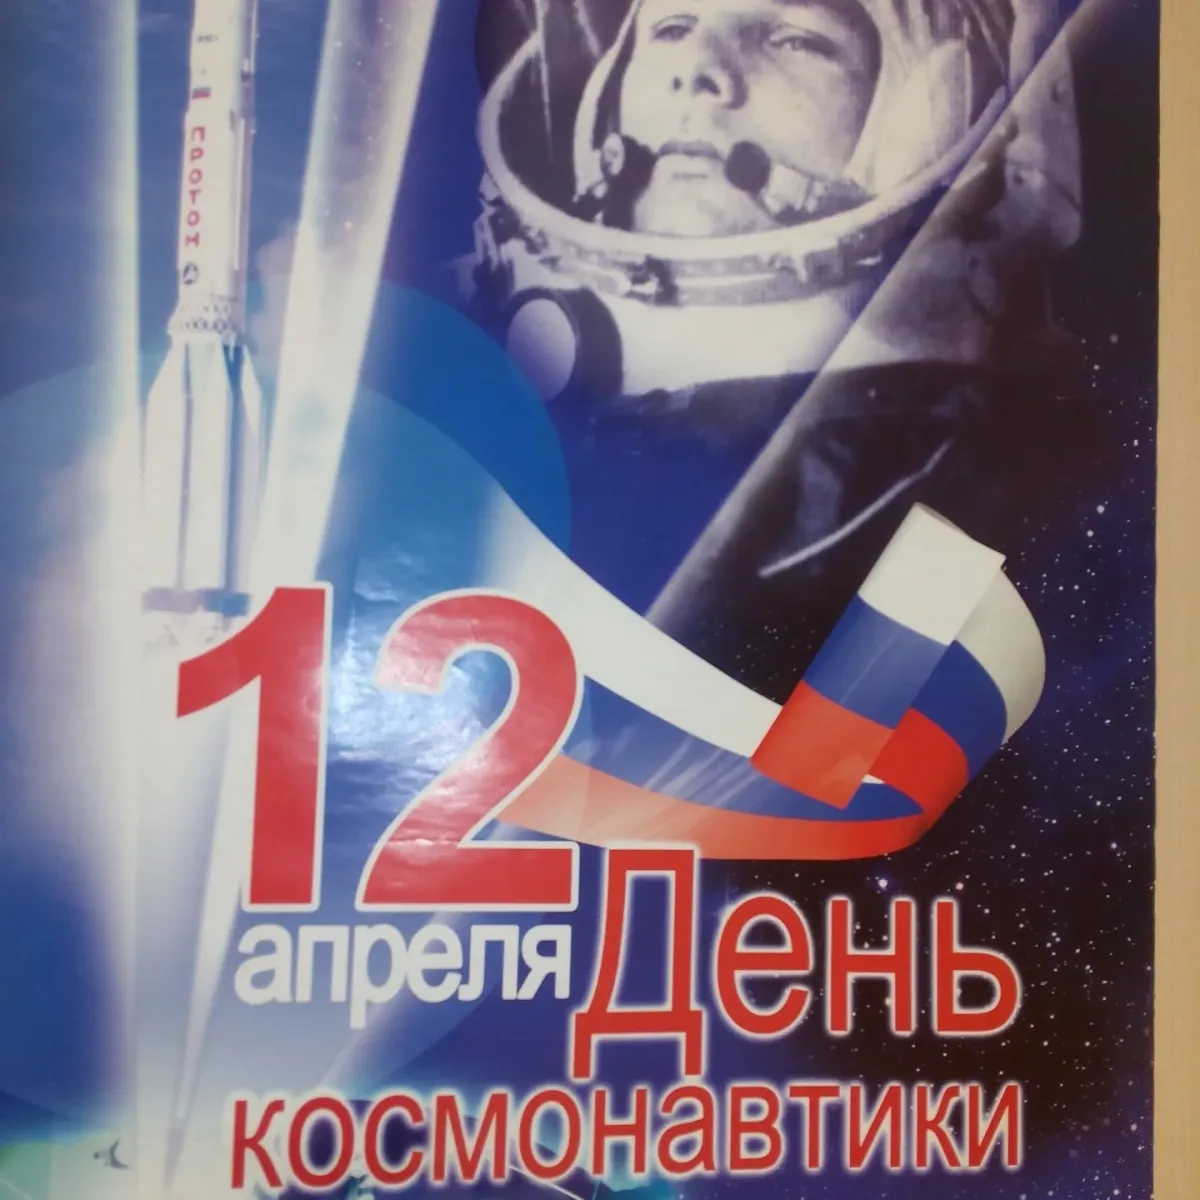 Праздник сегодня день космонавтики. День космонавтики. День Космонавта. 12 Апреля день космонавтики. День космонавтики картинки.